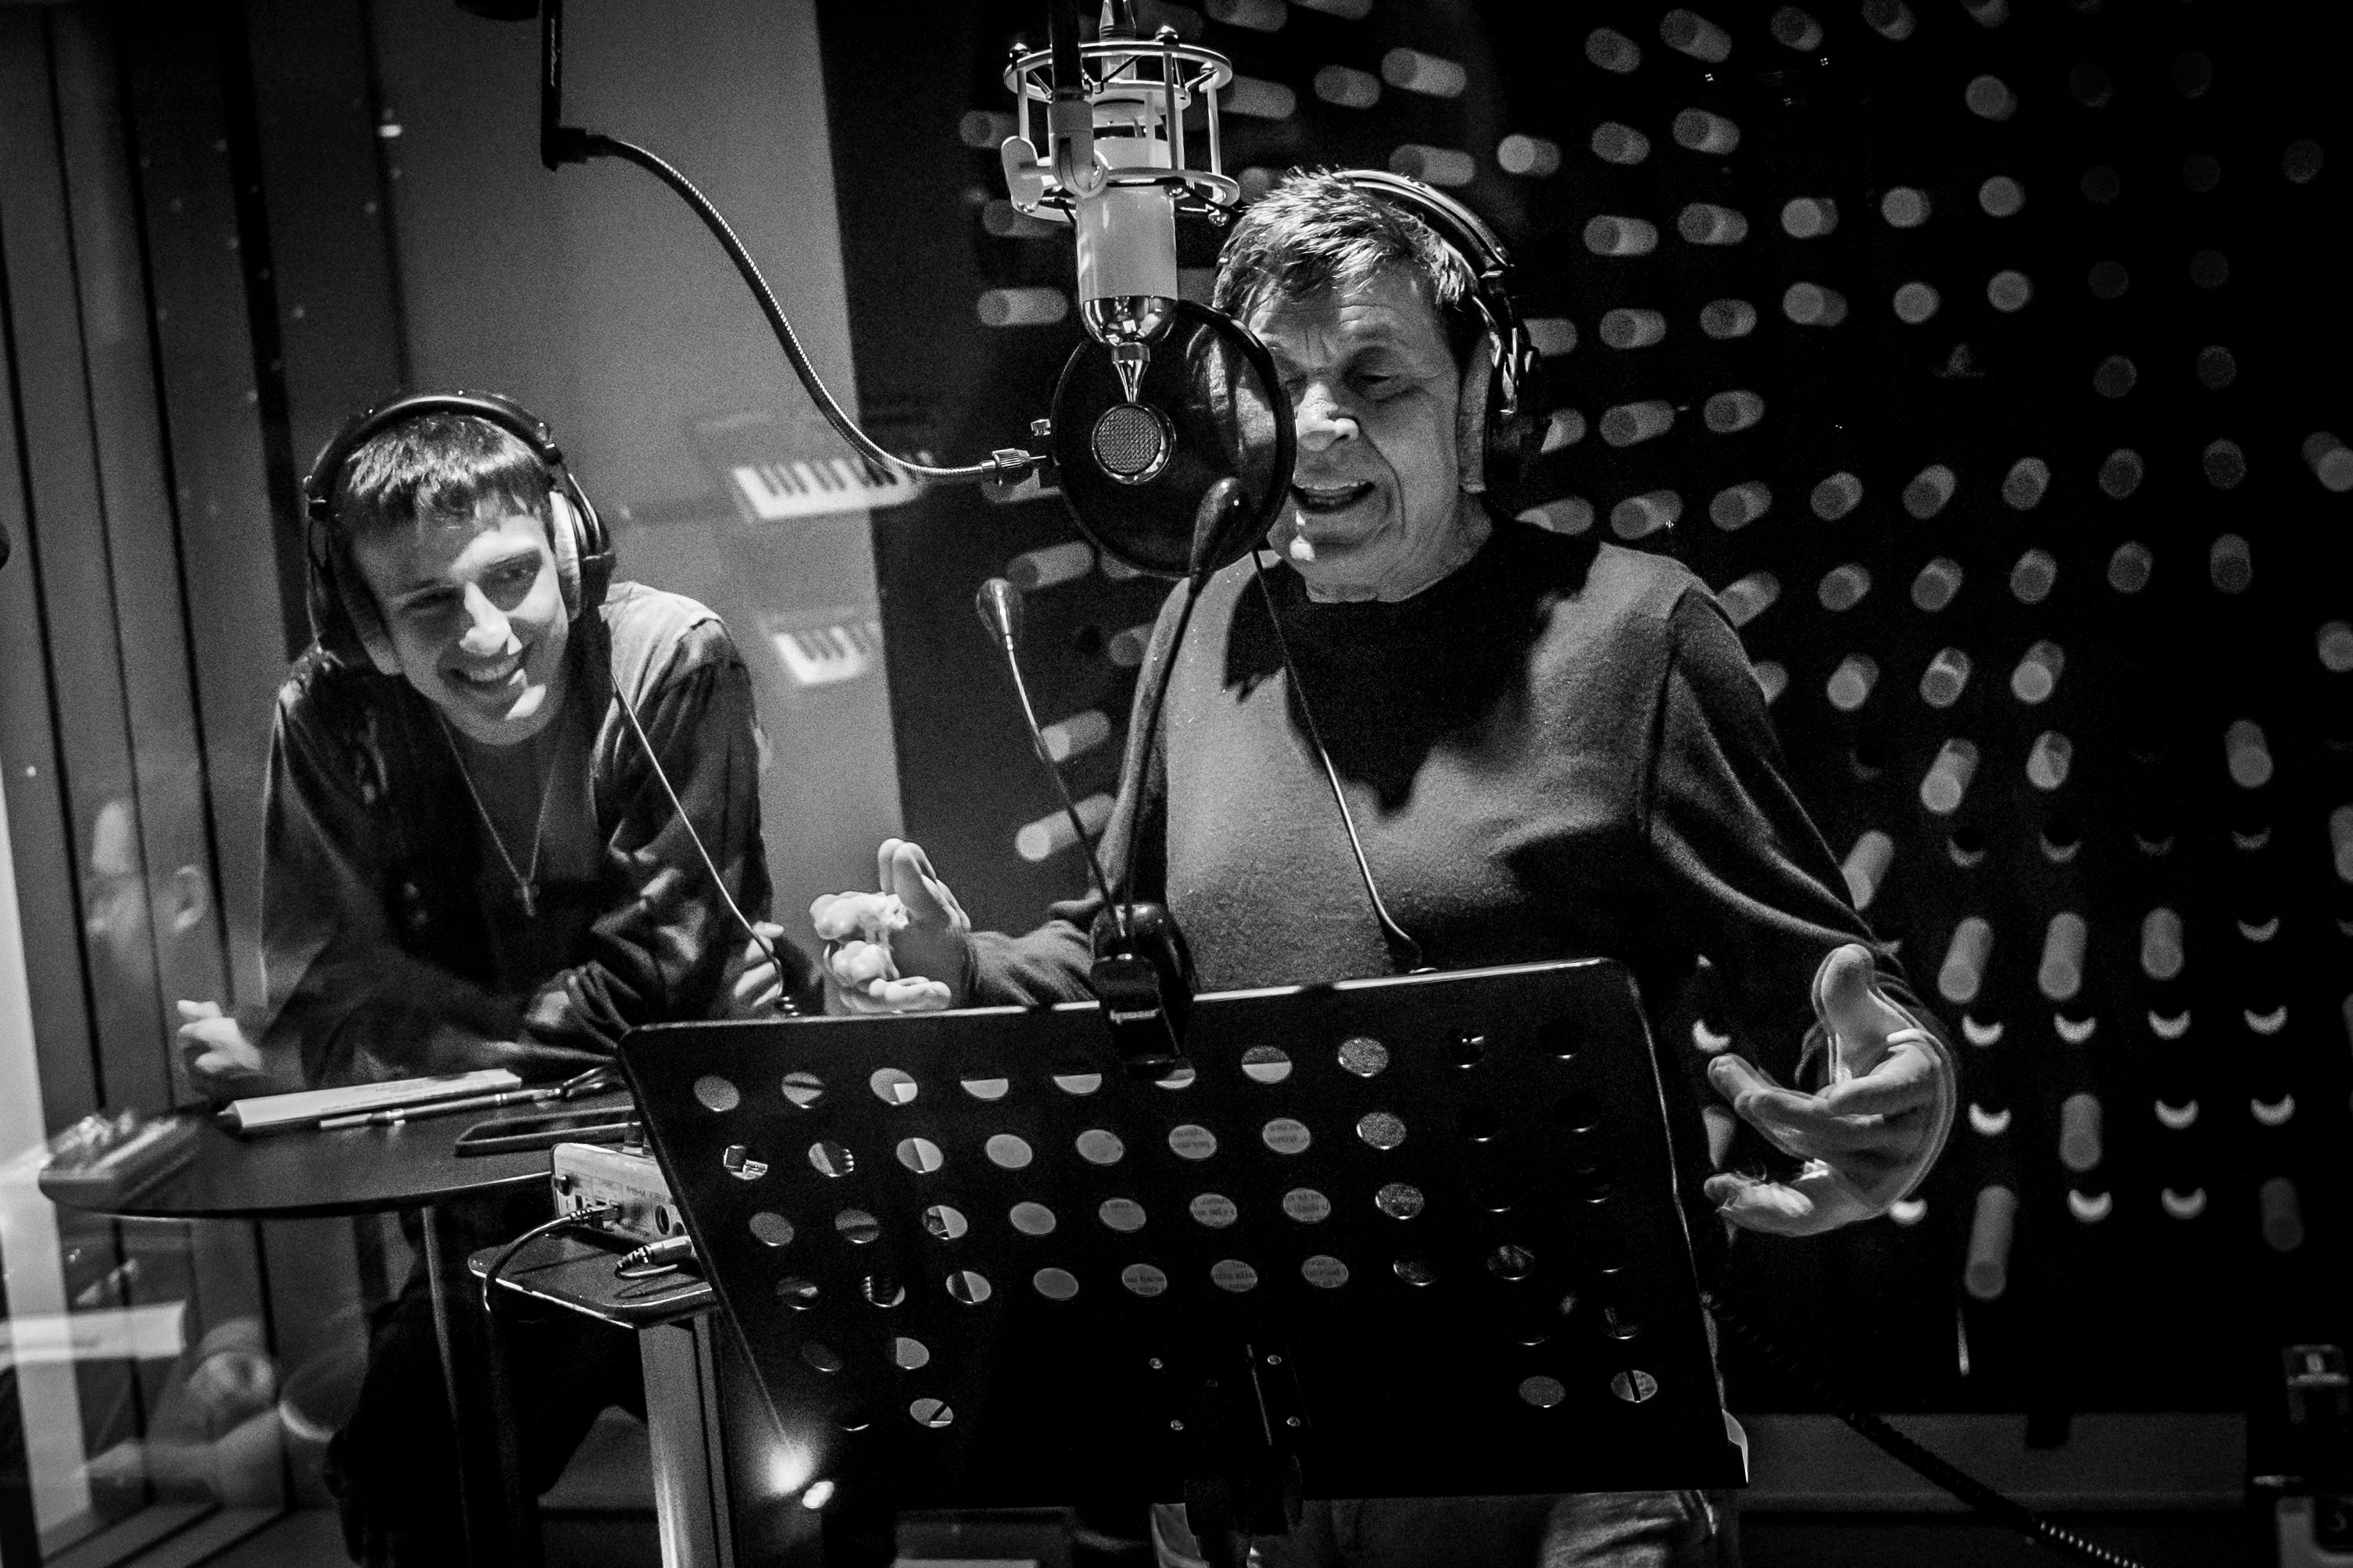 Gianni Morandi nuovo album e tour - immagini